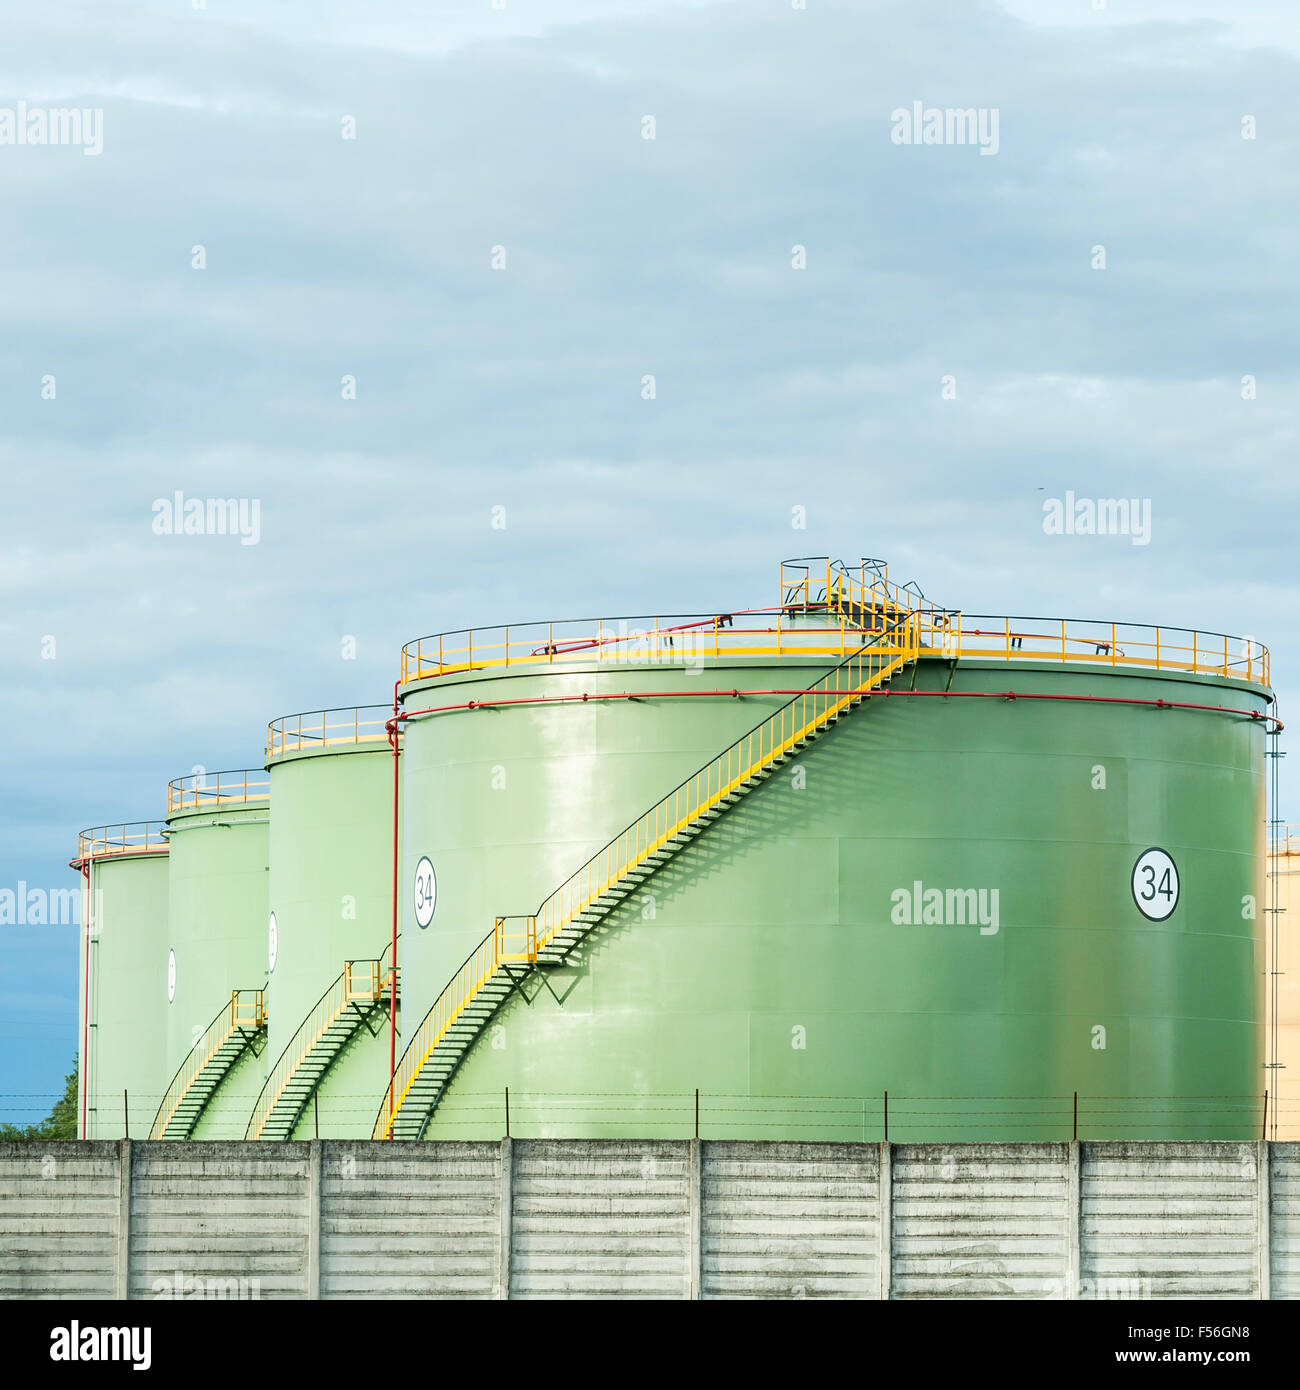 Industrial Storage Tanks. Oil tanks in line Stock Photo